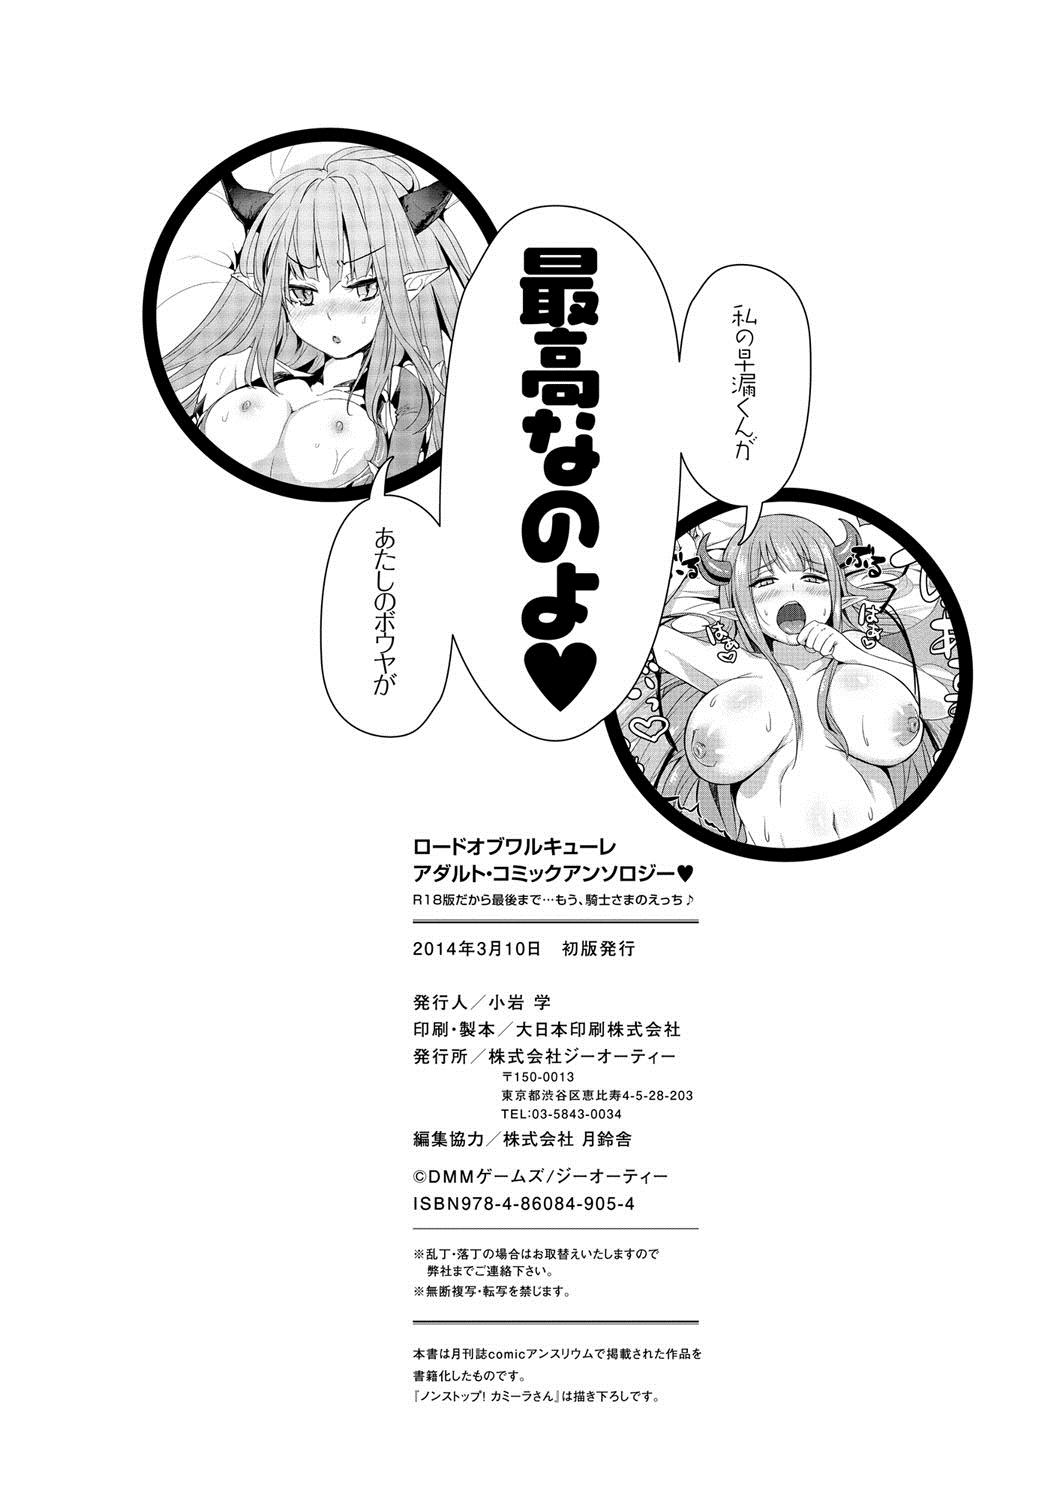 [Anthology] Lord of Valkyrie Adult - Comic Anthology R18 Handakara Saigomade... Mou, Kishi-sama no Ecchi♪ 133